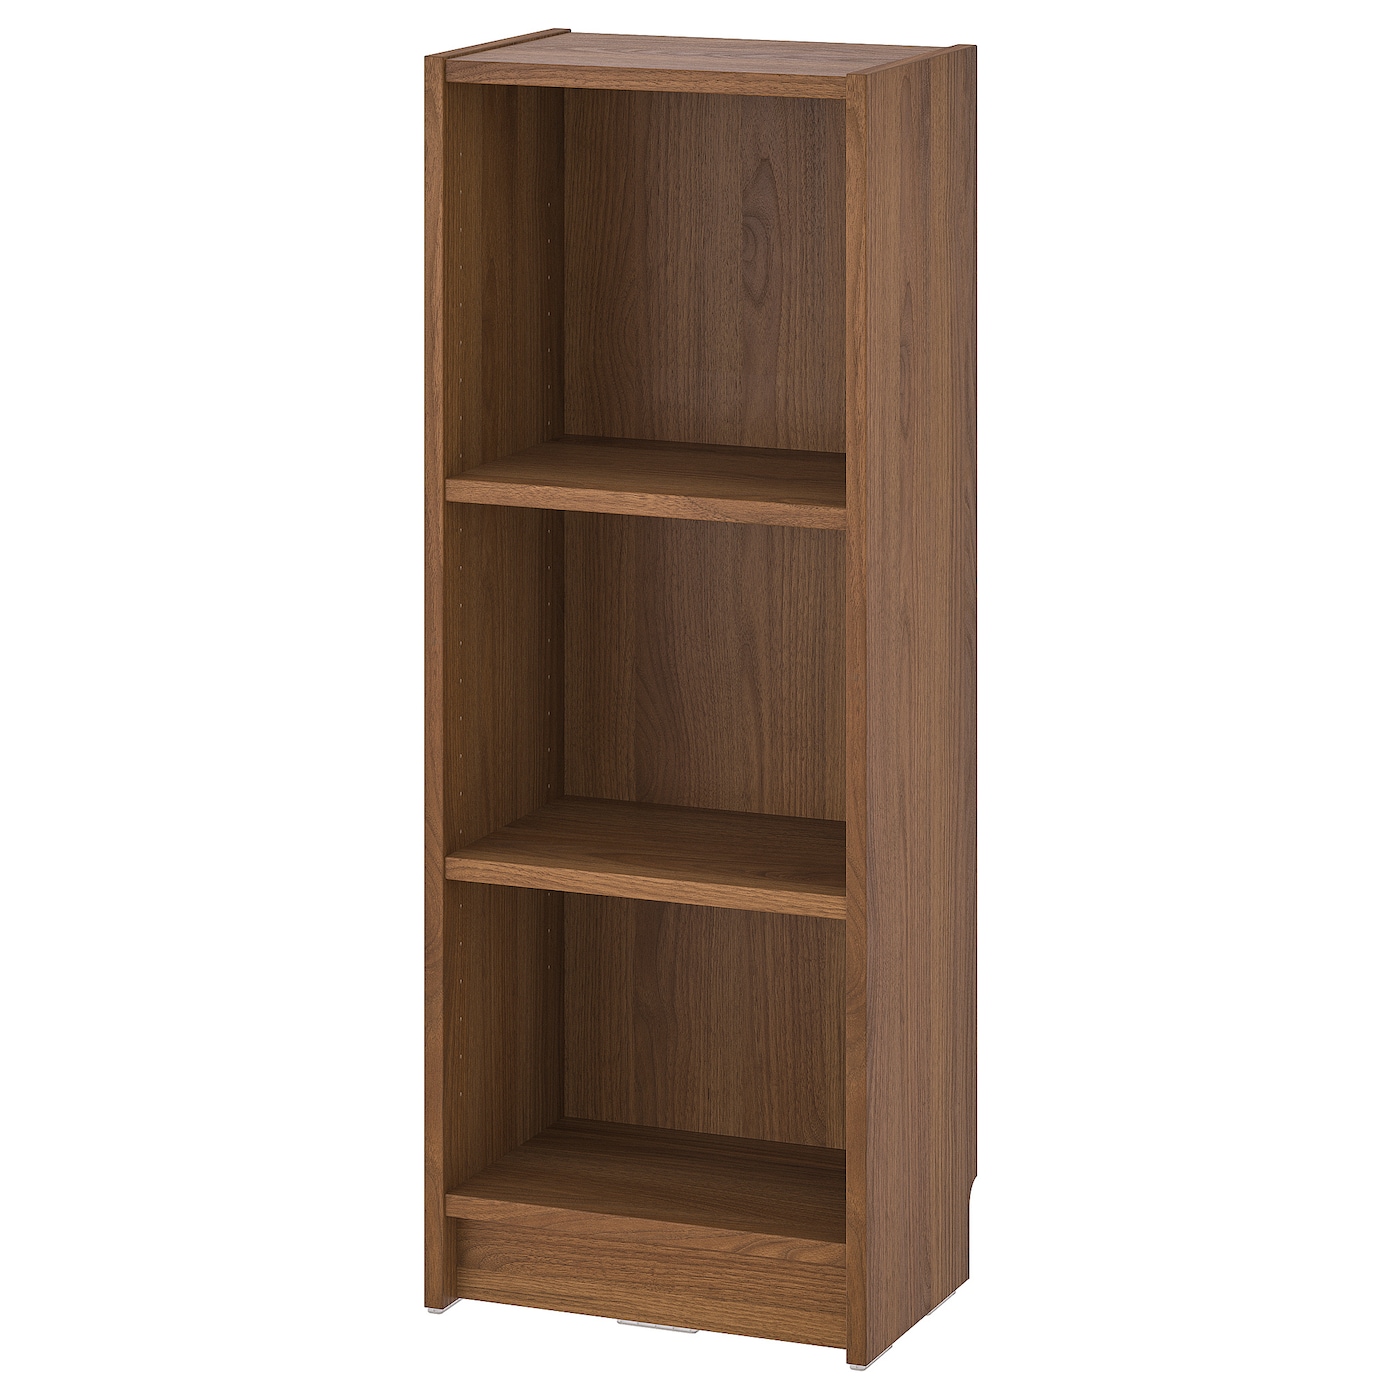 Книжный шкаф -  BILLY IKEA/ БИЛЛИ ИКЕА,40х28х106 см, коричневый